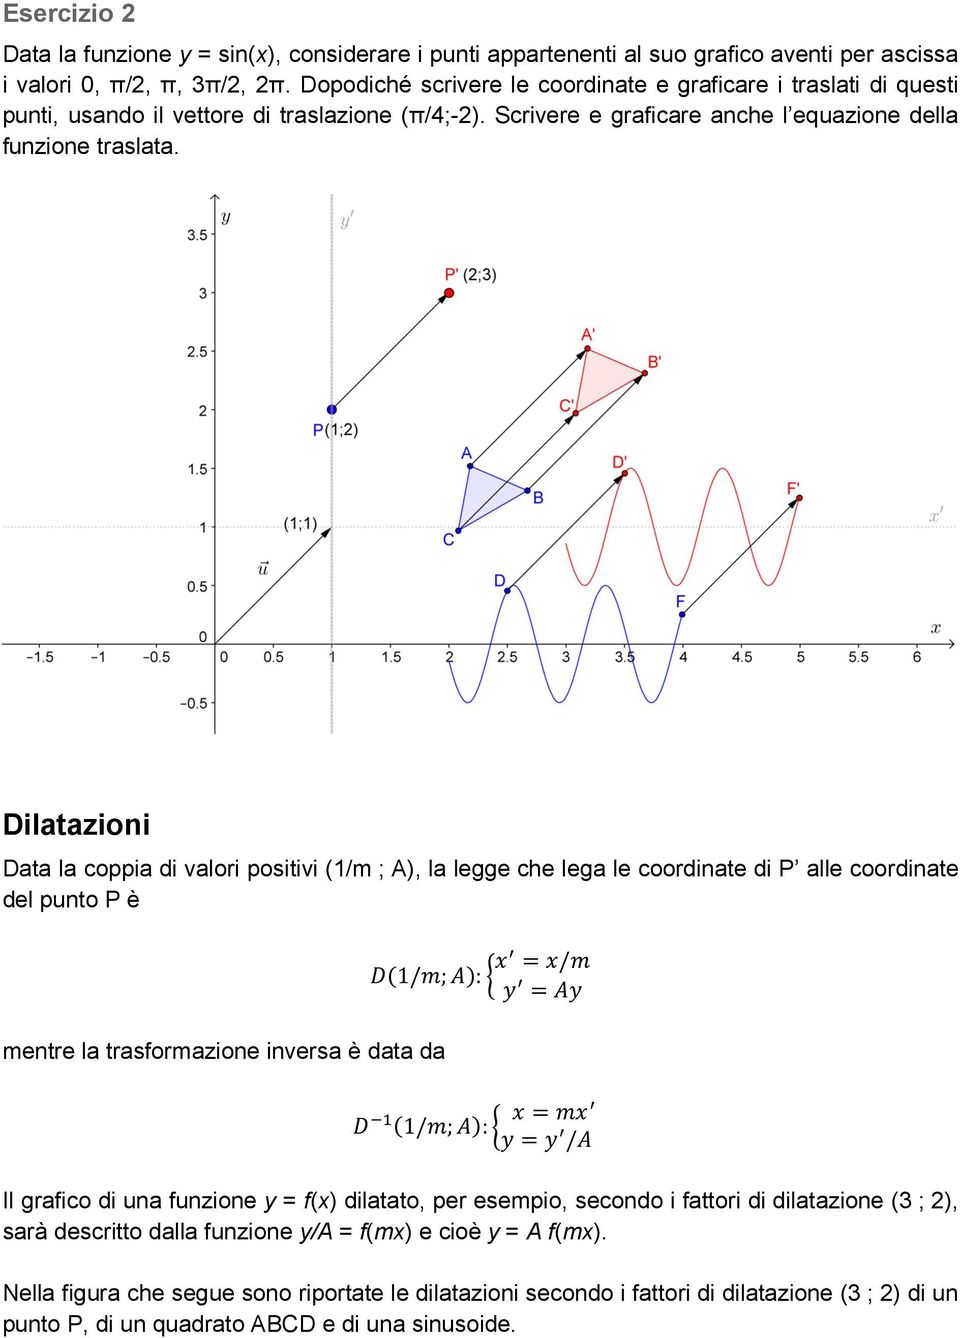 Dilatazioni Data la coppia di valori positivi (1/m ; A), la legge che lega le coordinate di P alle coordinate del punto P è mentre la trasformazione inversa è data da 1/;: / 1/;: / Il grafico di una